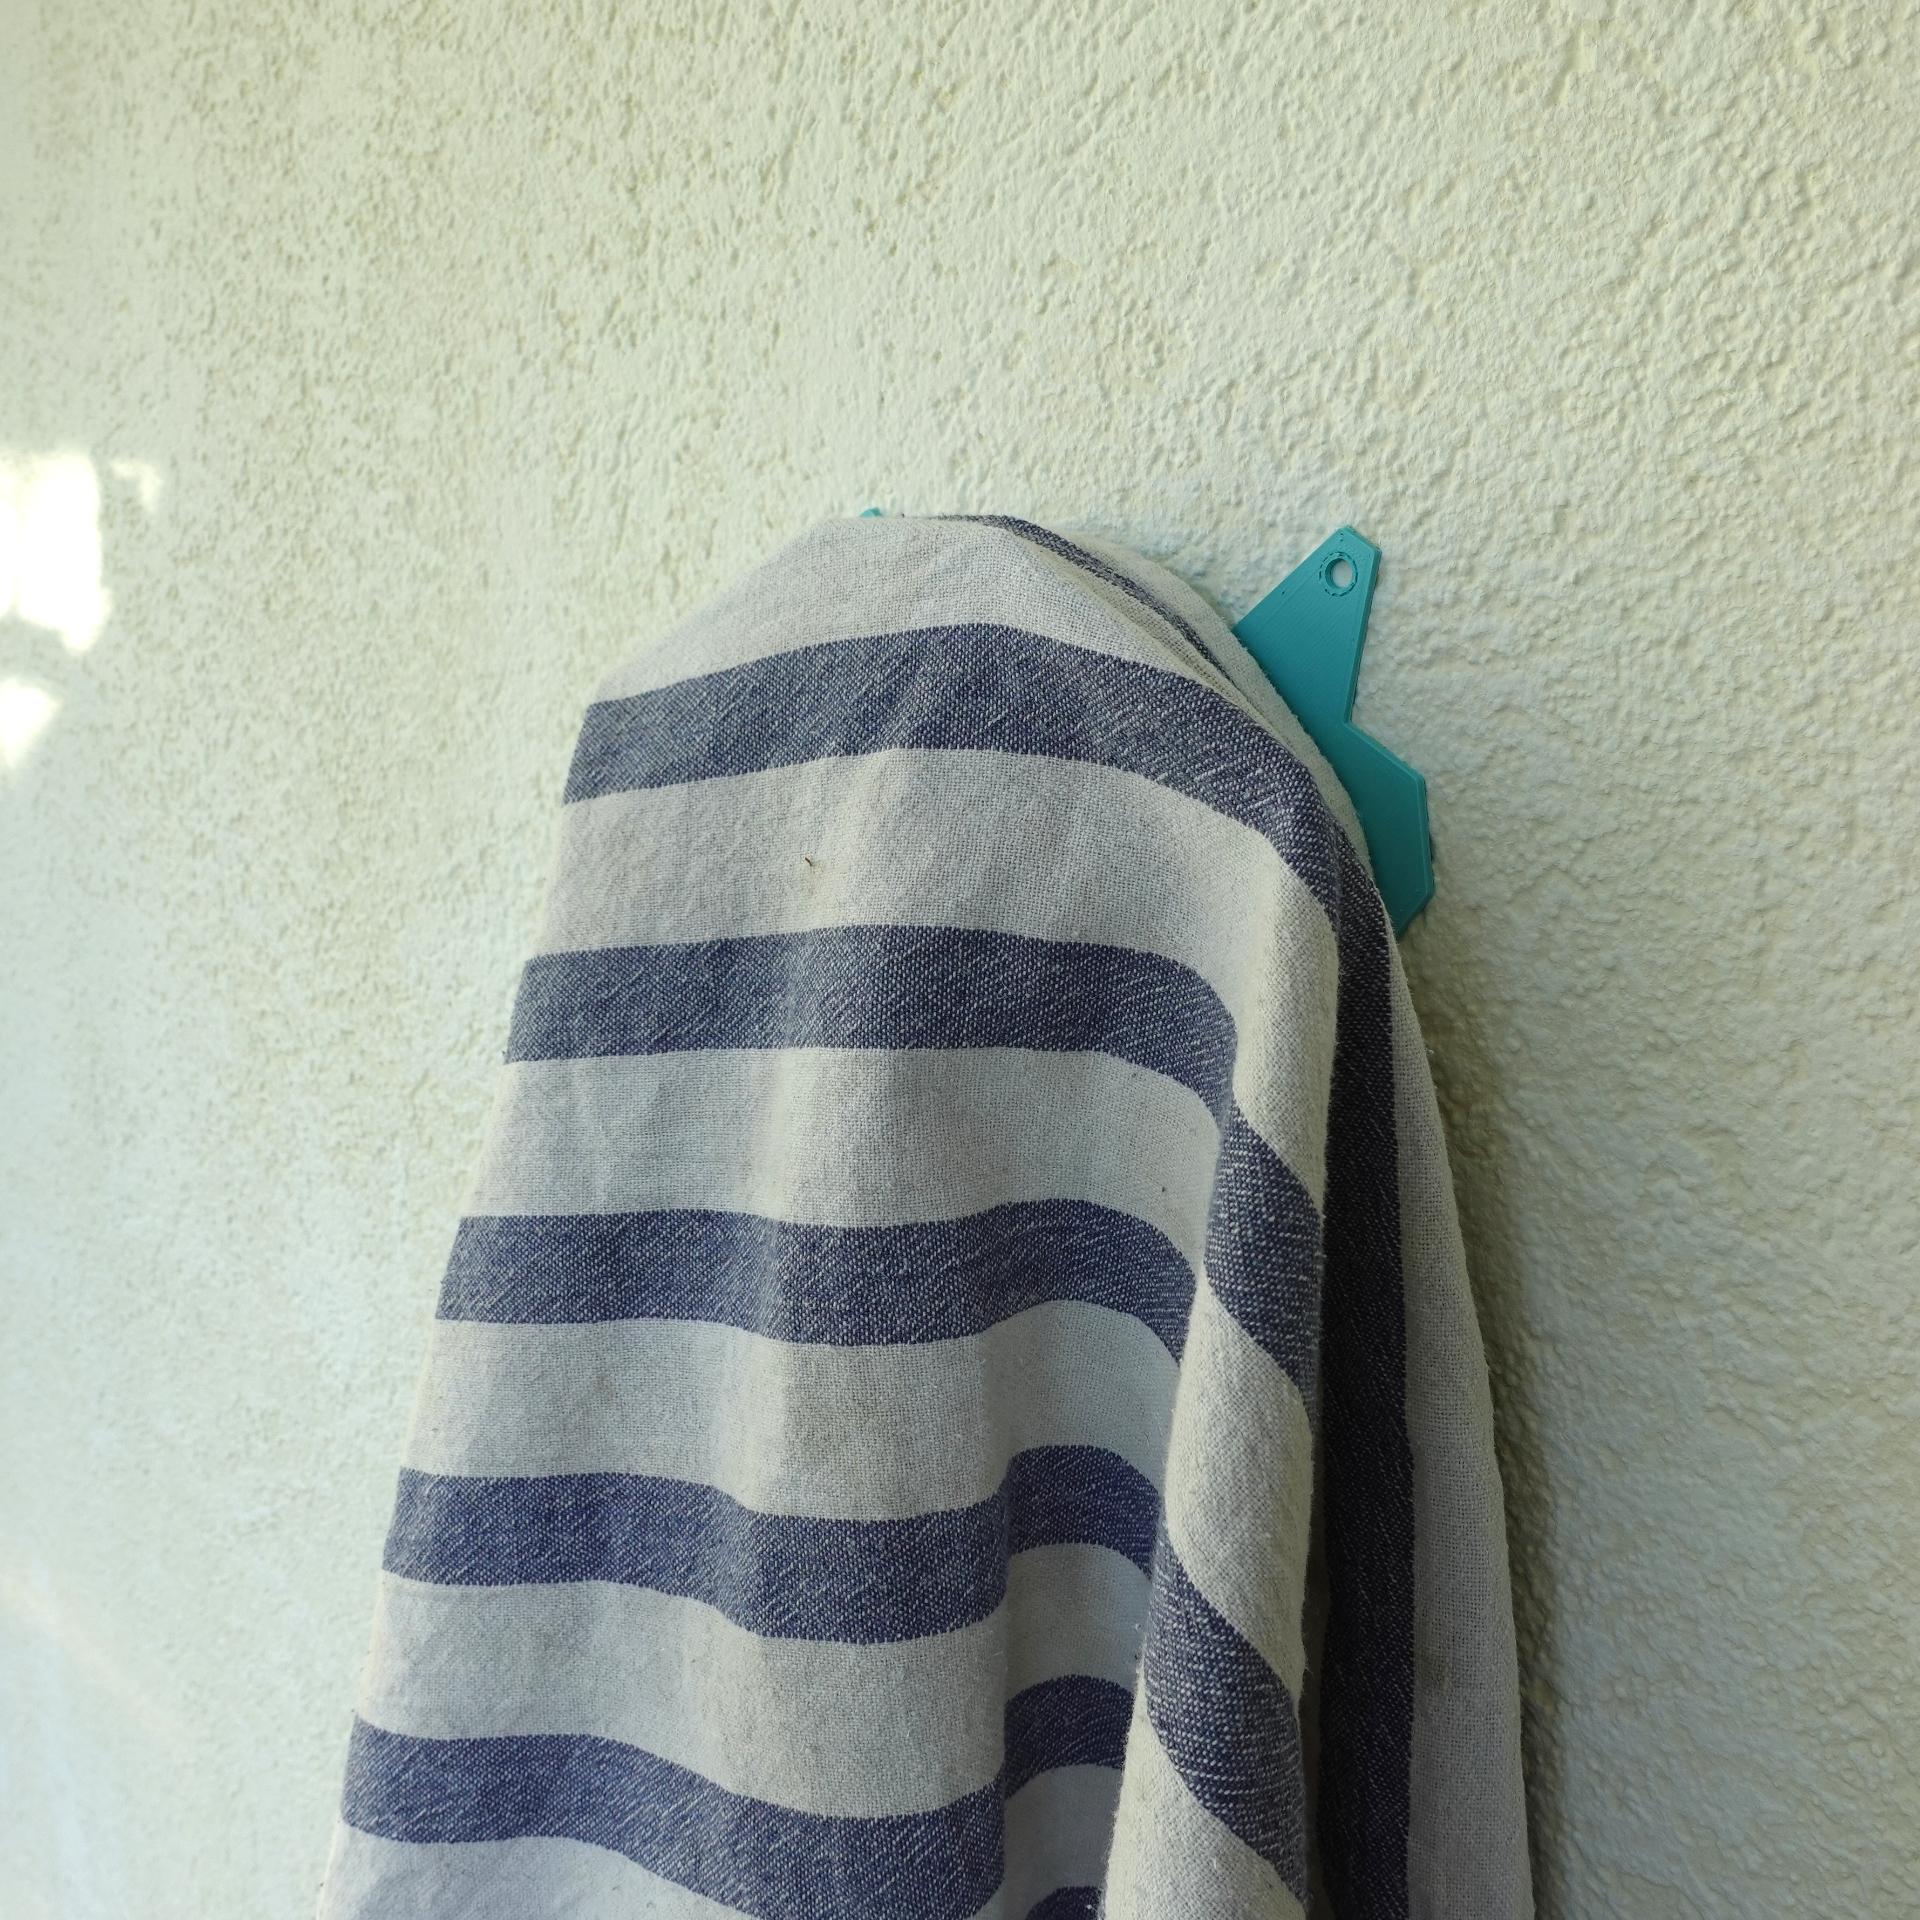 Towel hanger 3d model